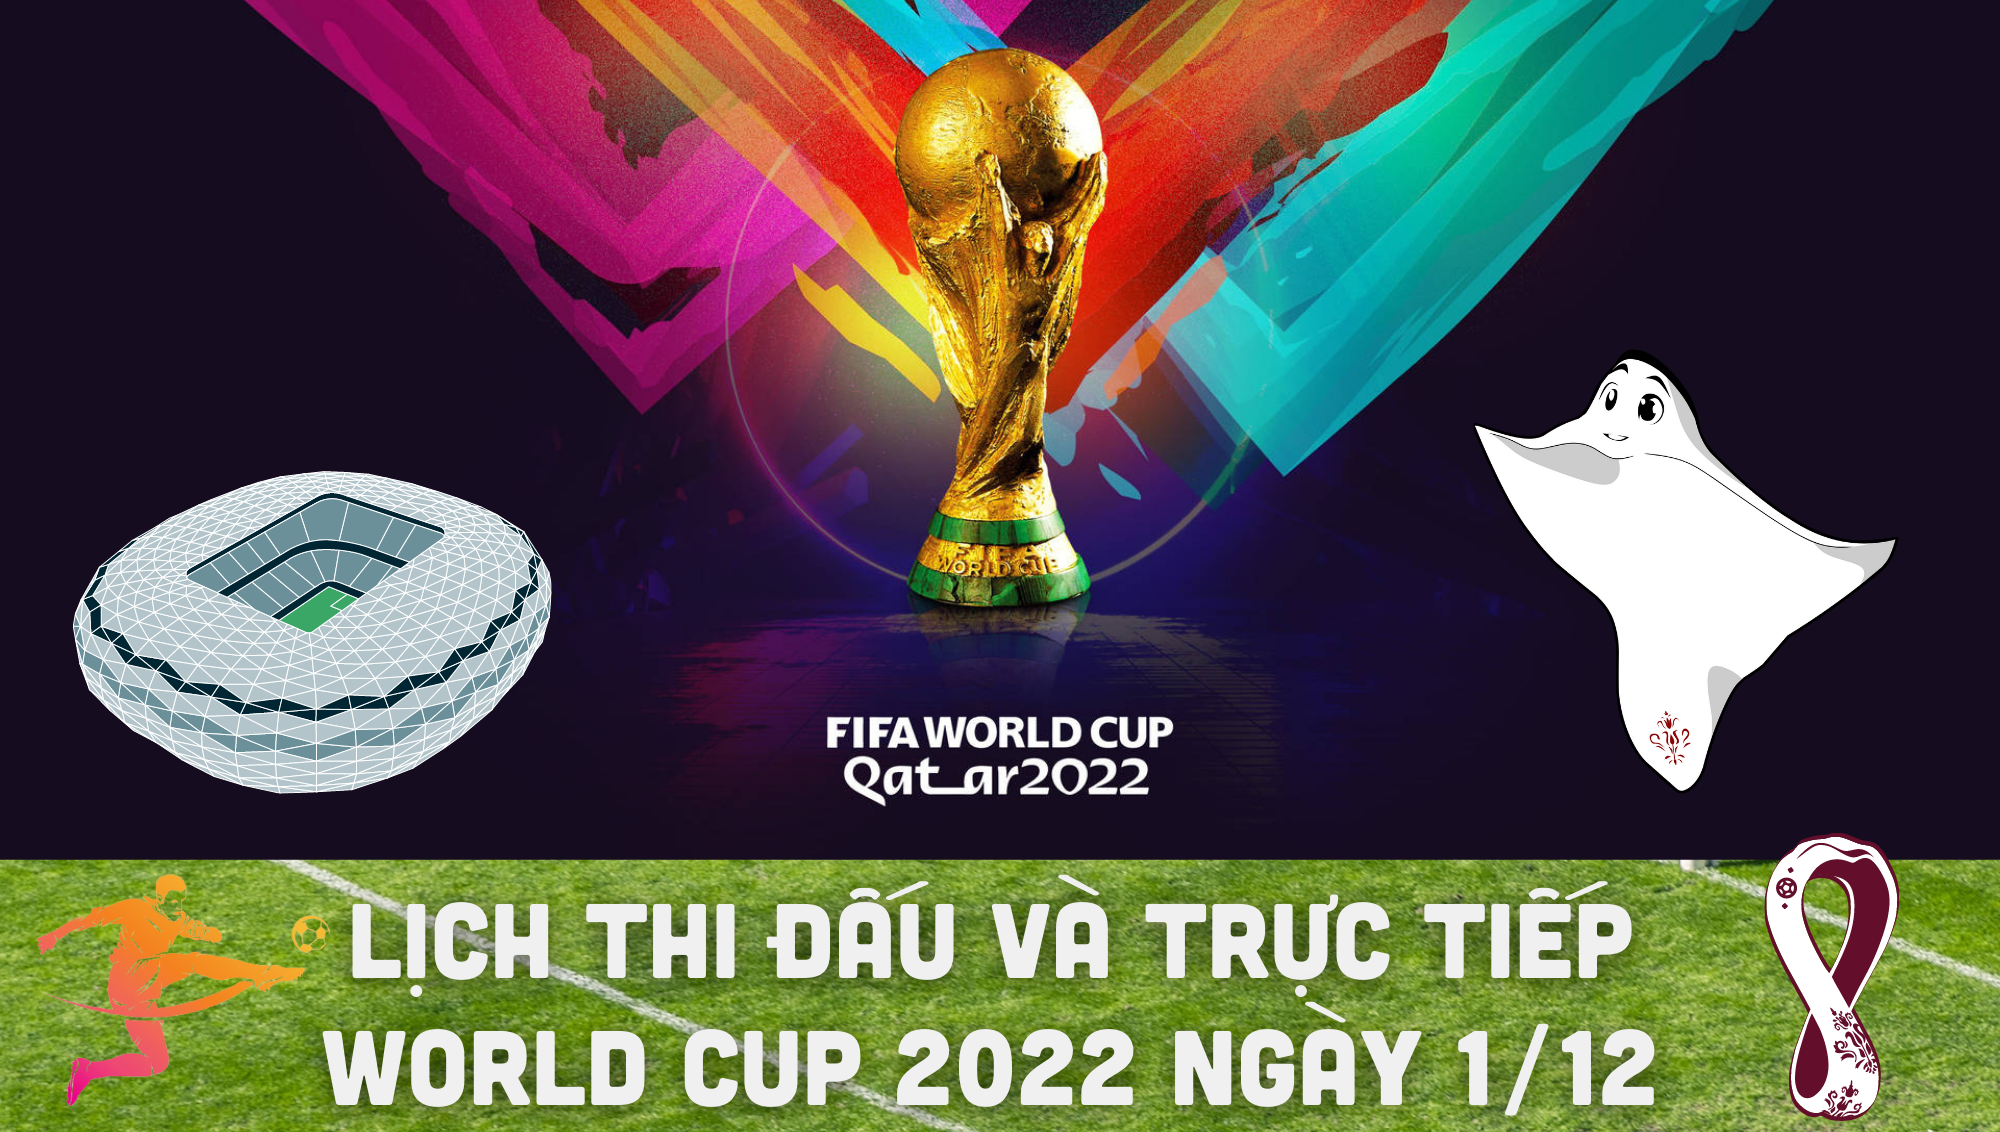 Lịch thi đấu và trực tiếp World Cup 2022 ngày 1/12